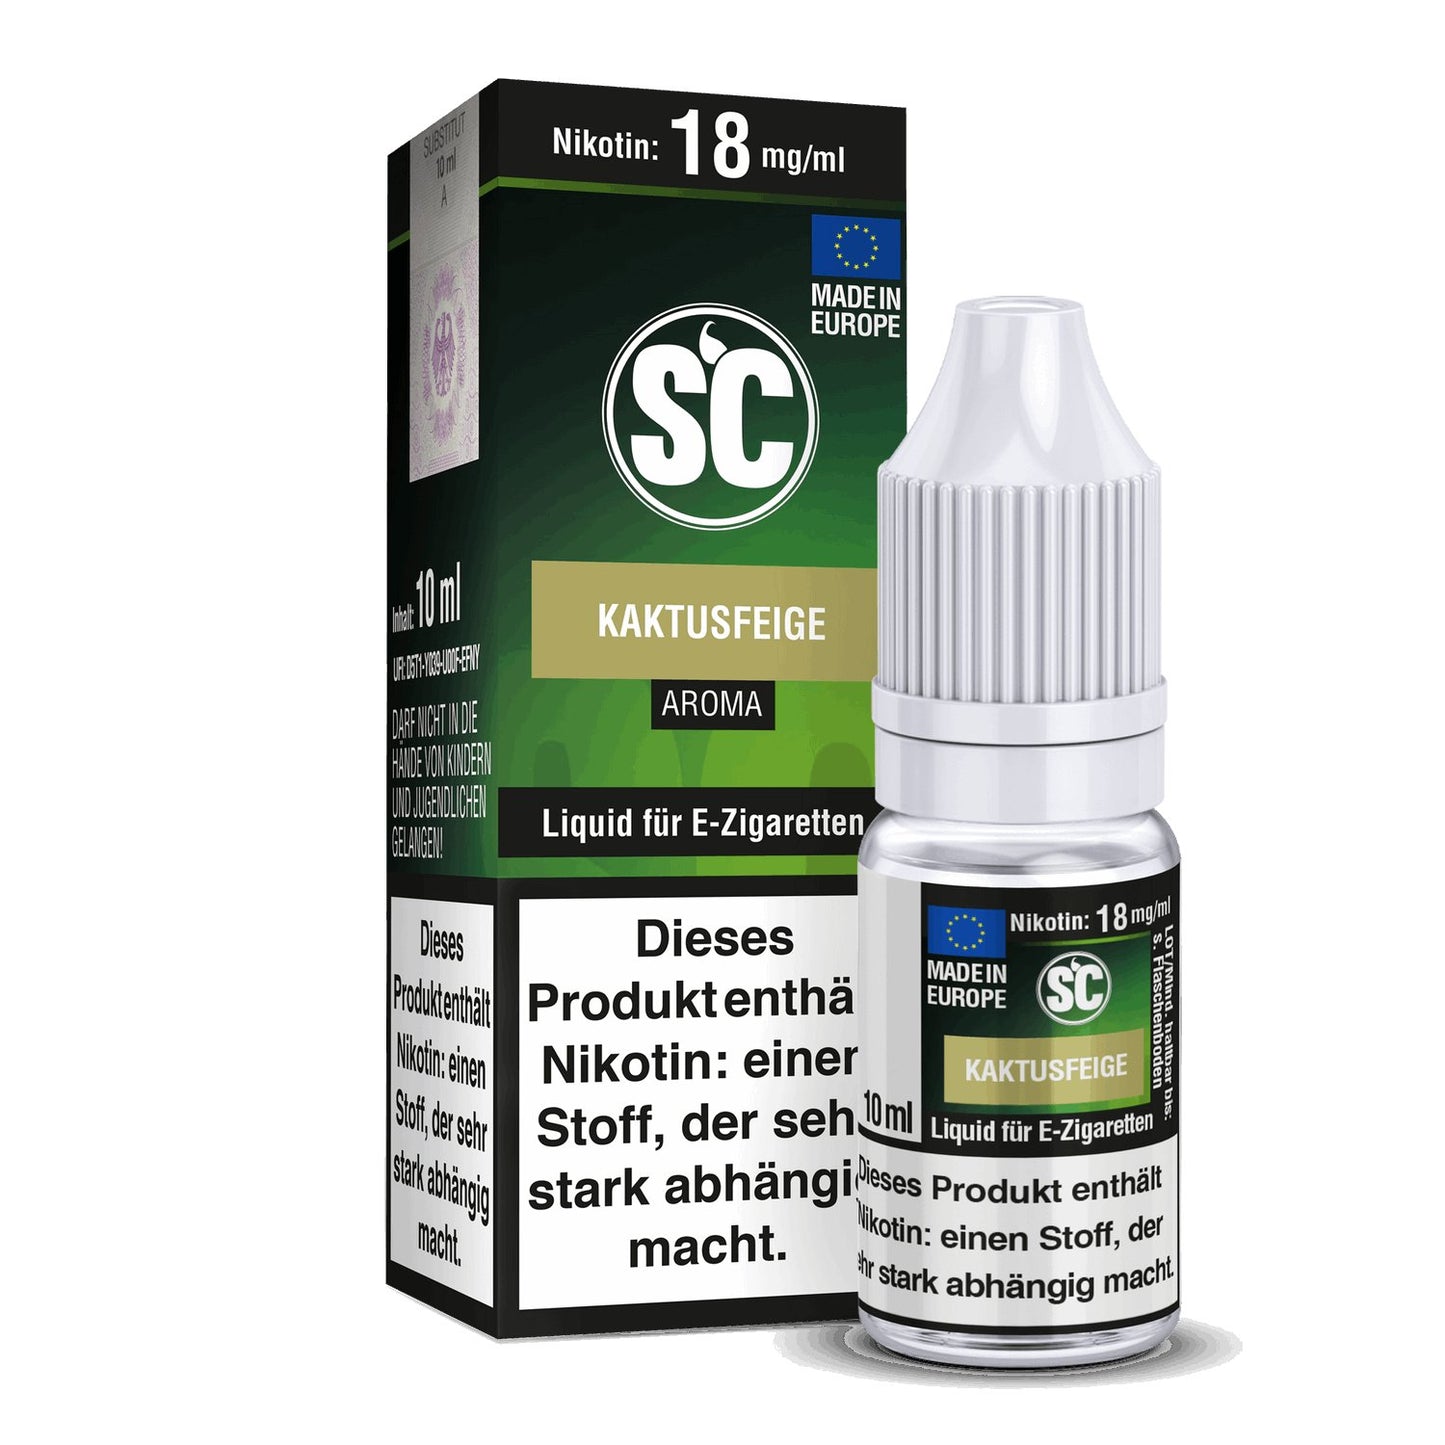 SC - Kaktusfeige - 10ml Fertigliquid (Nikotinfrei/Nikotin) - 1er Packung 18 mg/ml - Vapes4you